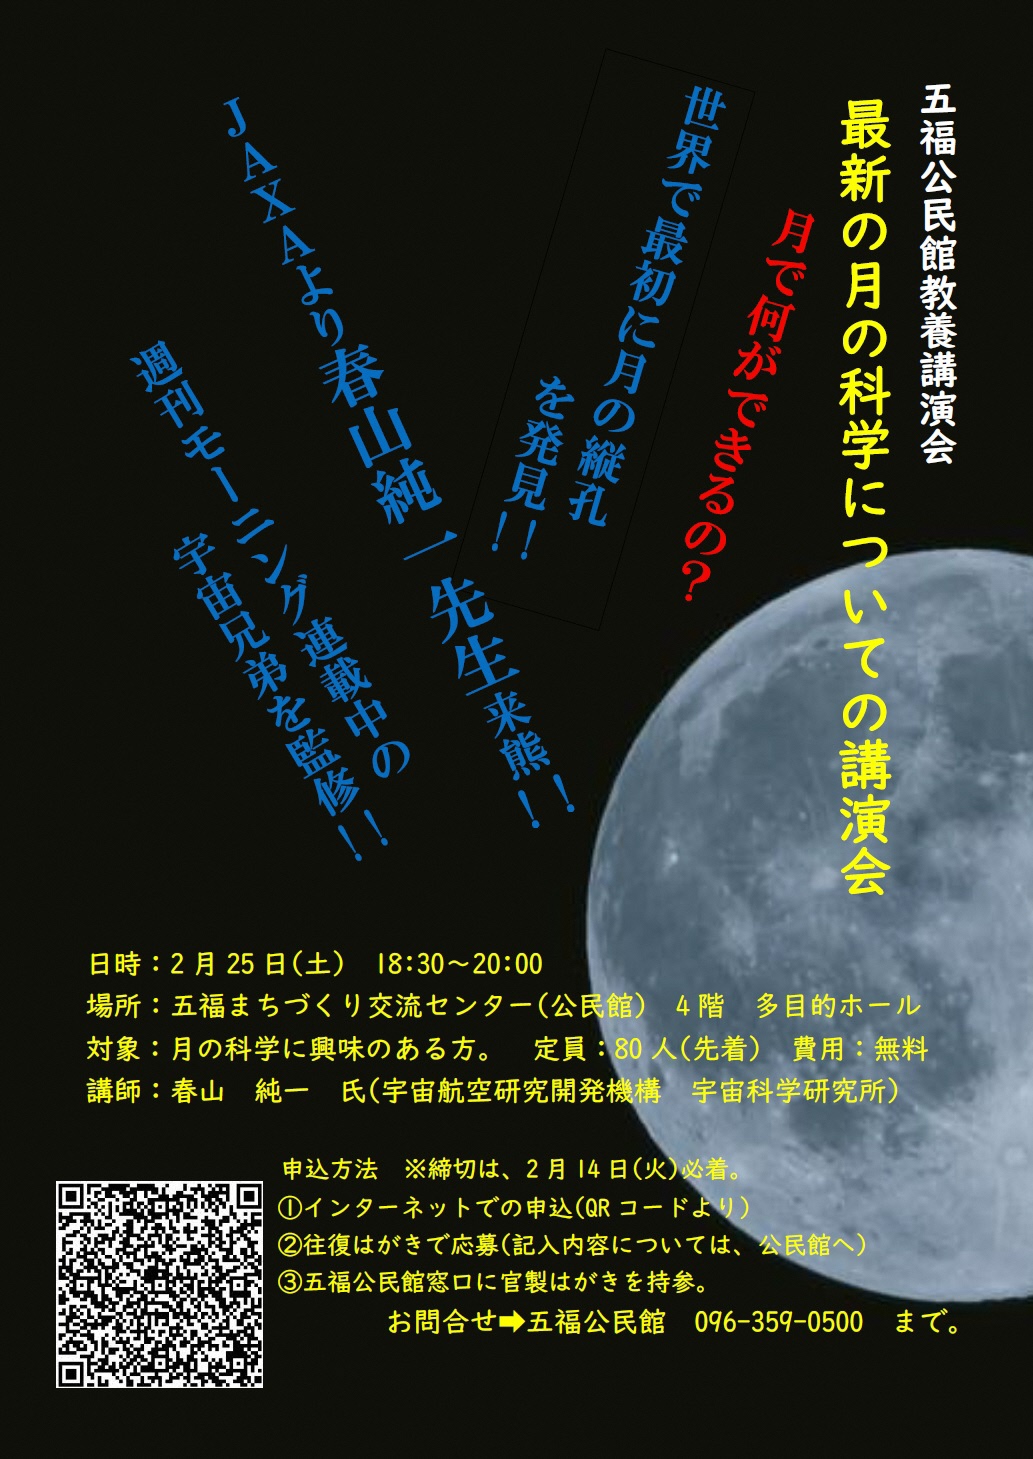 最新の月の科学についての教養講演会のチラシの画像